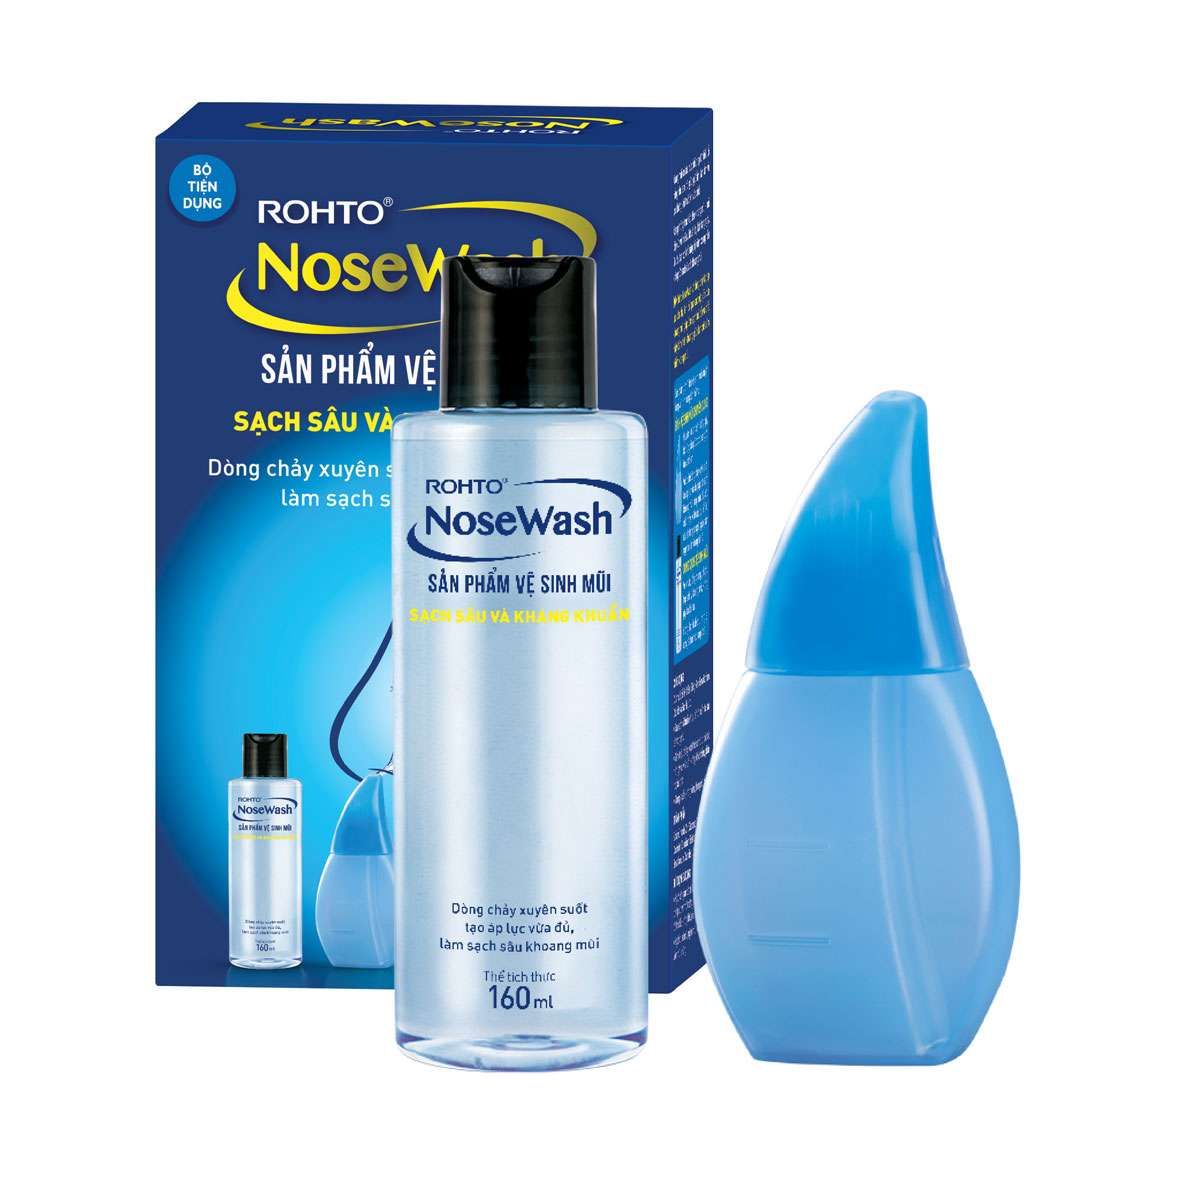 Bộ Tiện Dụng Vệ Sinh Mũi Rohto NoseWash Miniset: Bình Vệ Sinh Mũi Easy Shower + Bình Dung Dịch (160ml)